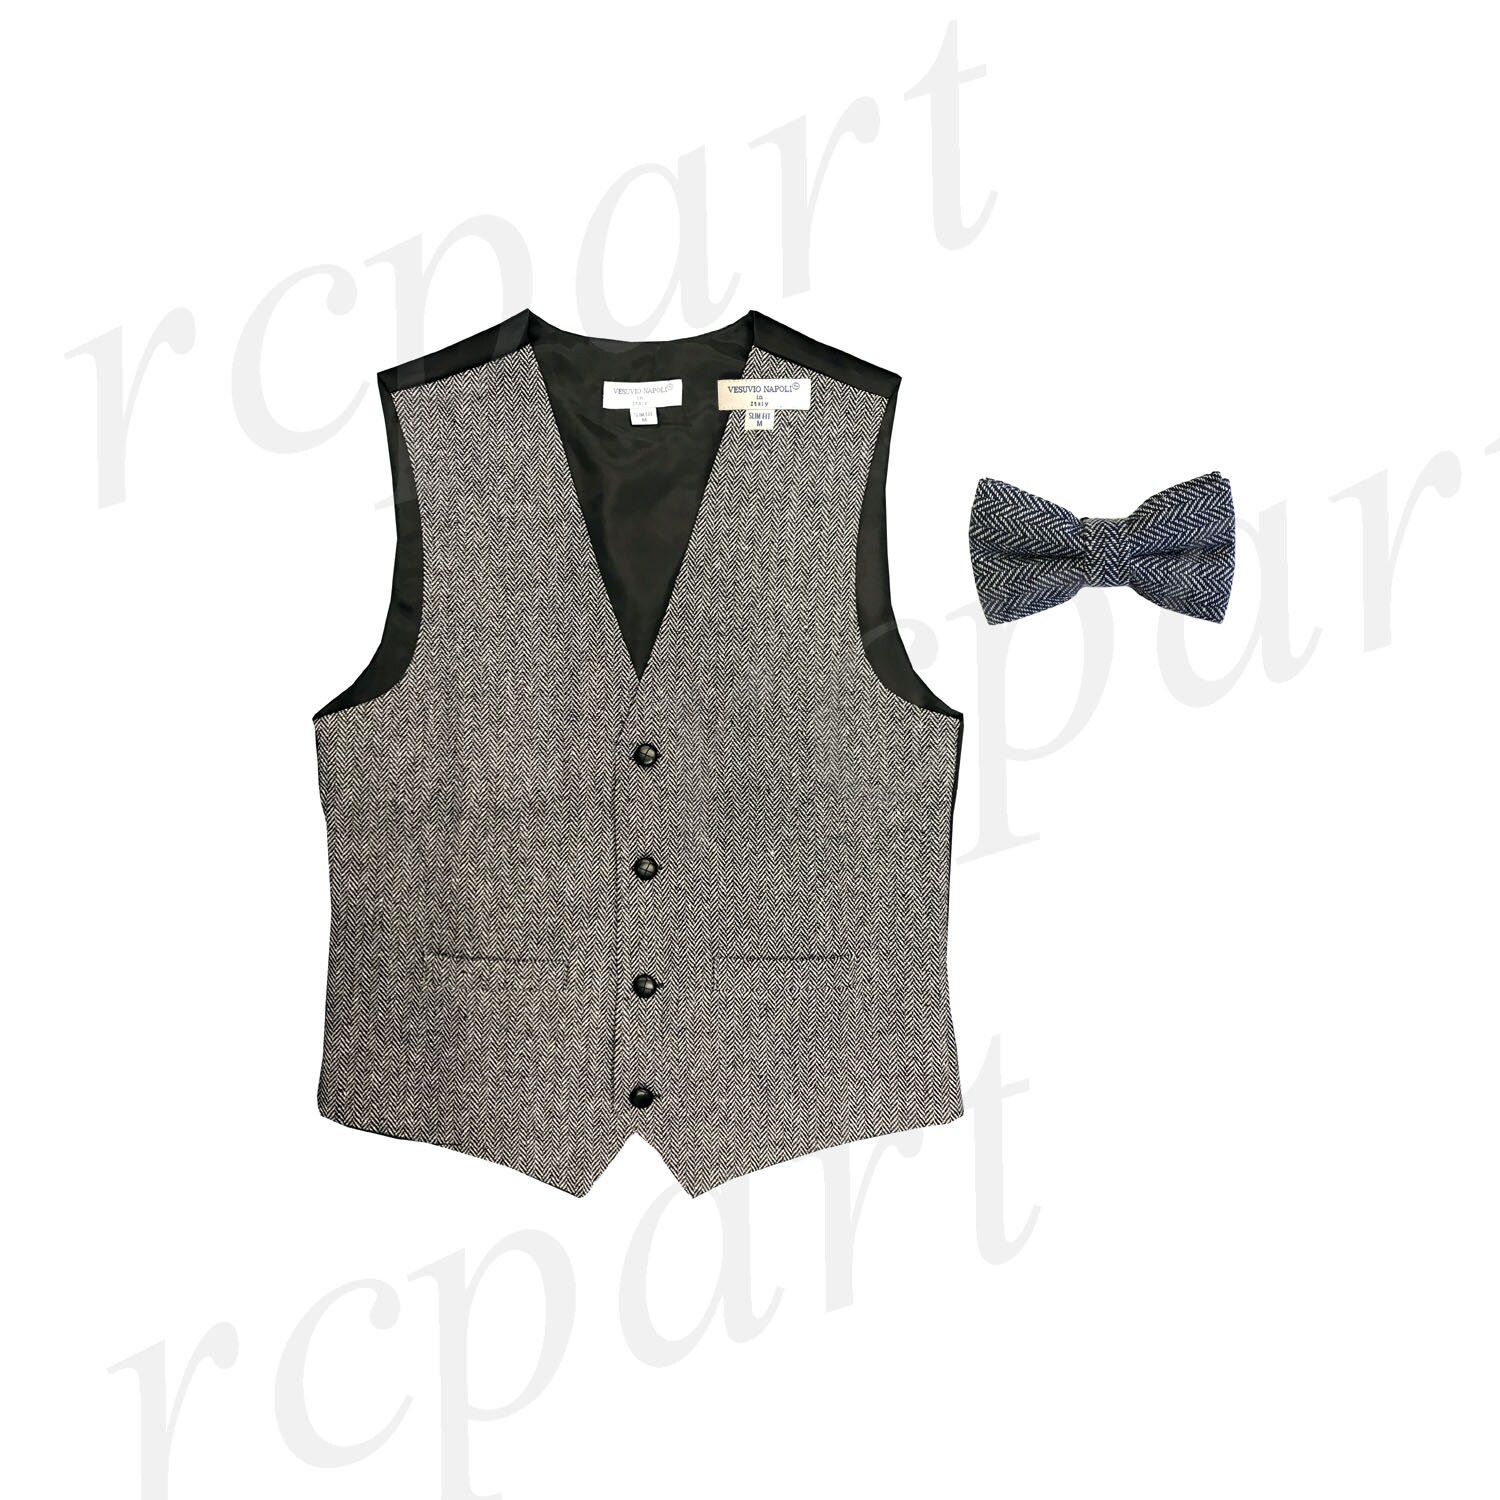 New Men's Wool Blend Slim Fit Herringbone Tweed Vest Waistcoat With Matching Bowtie Set, Black White